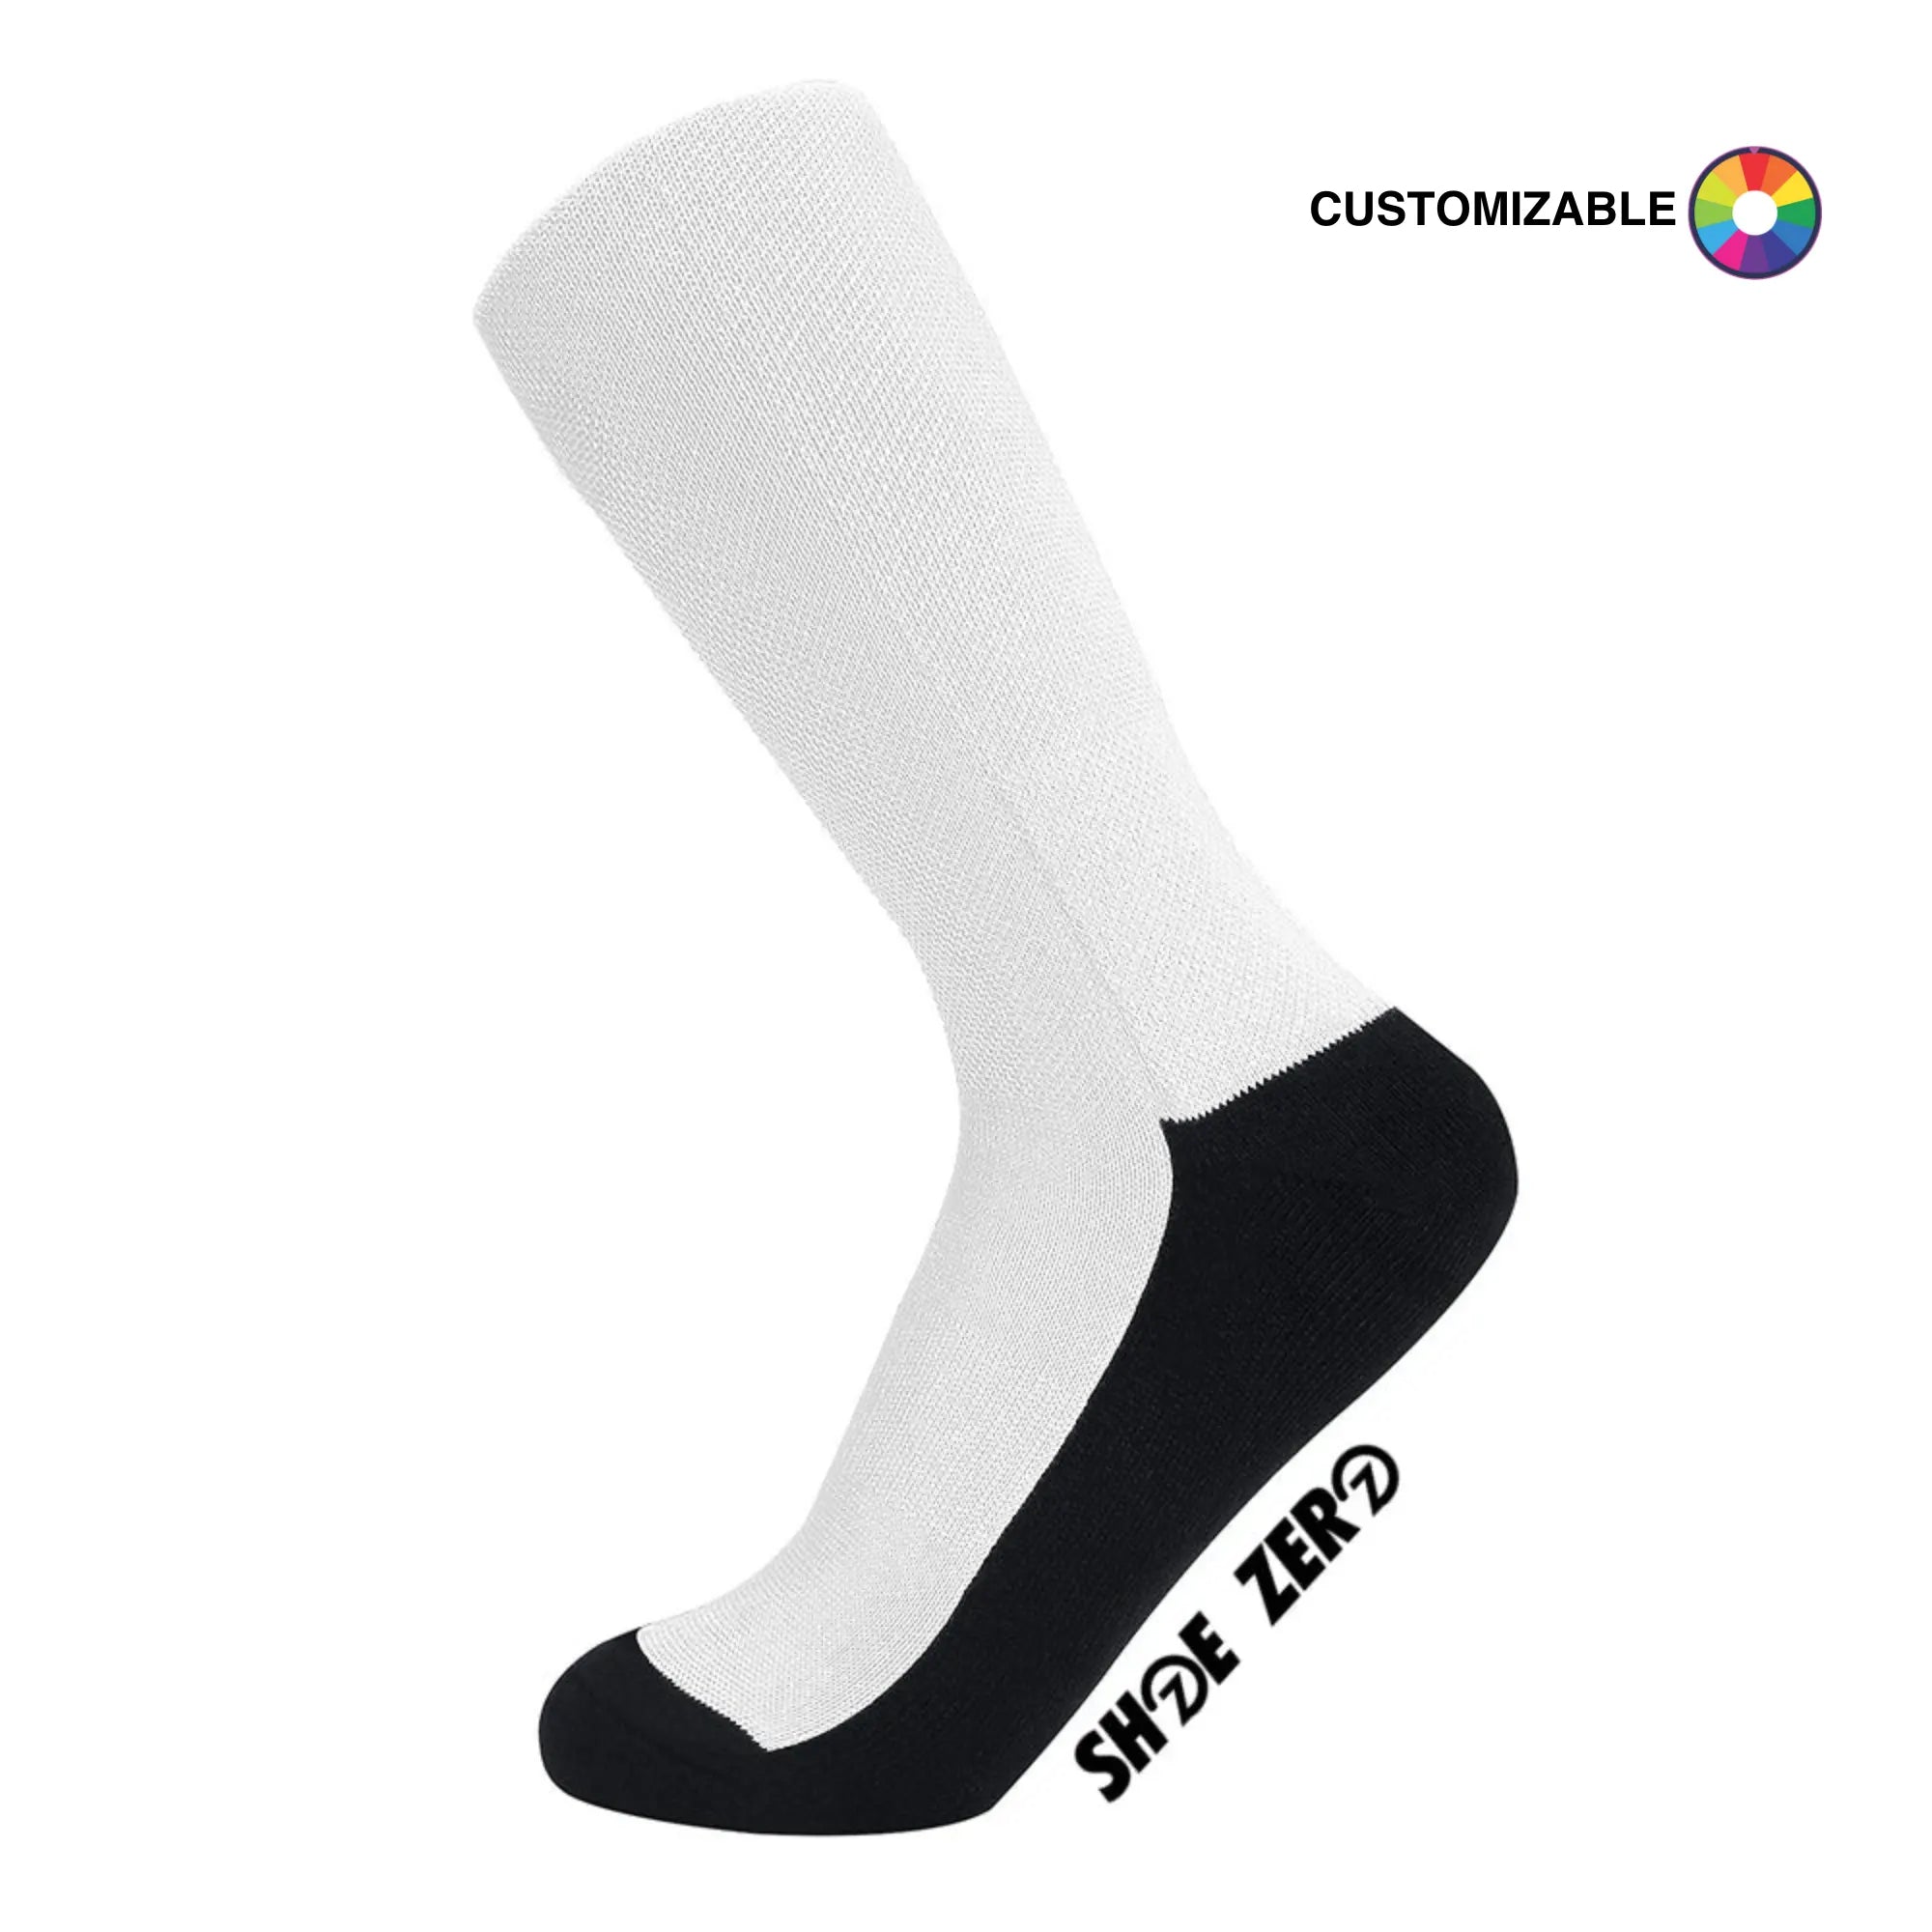 Customizable Crew Socks